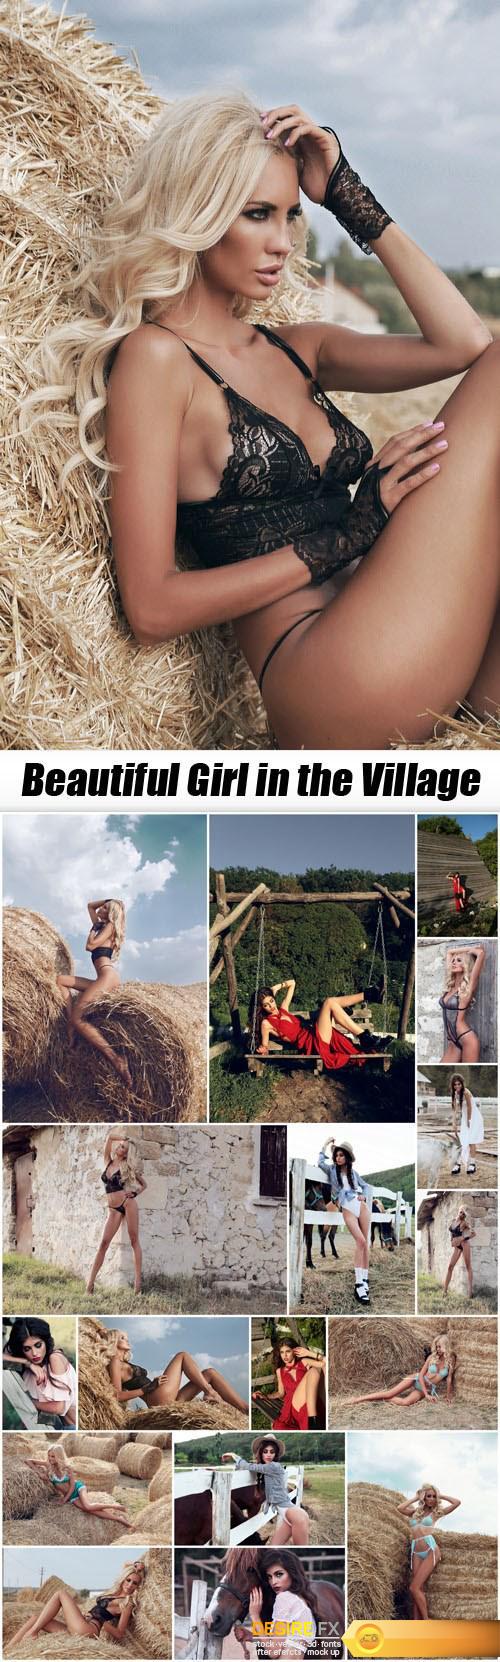 Beautiful Girl in the Village - 18xUHQ JPEG